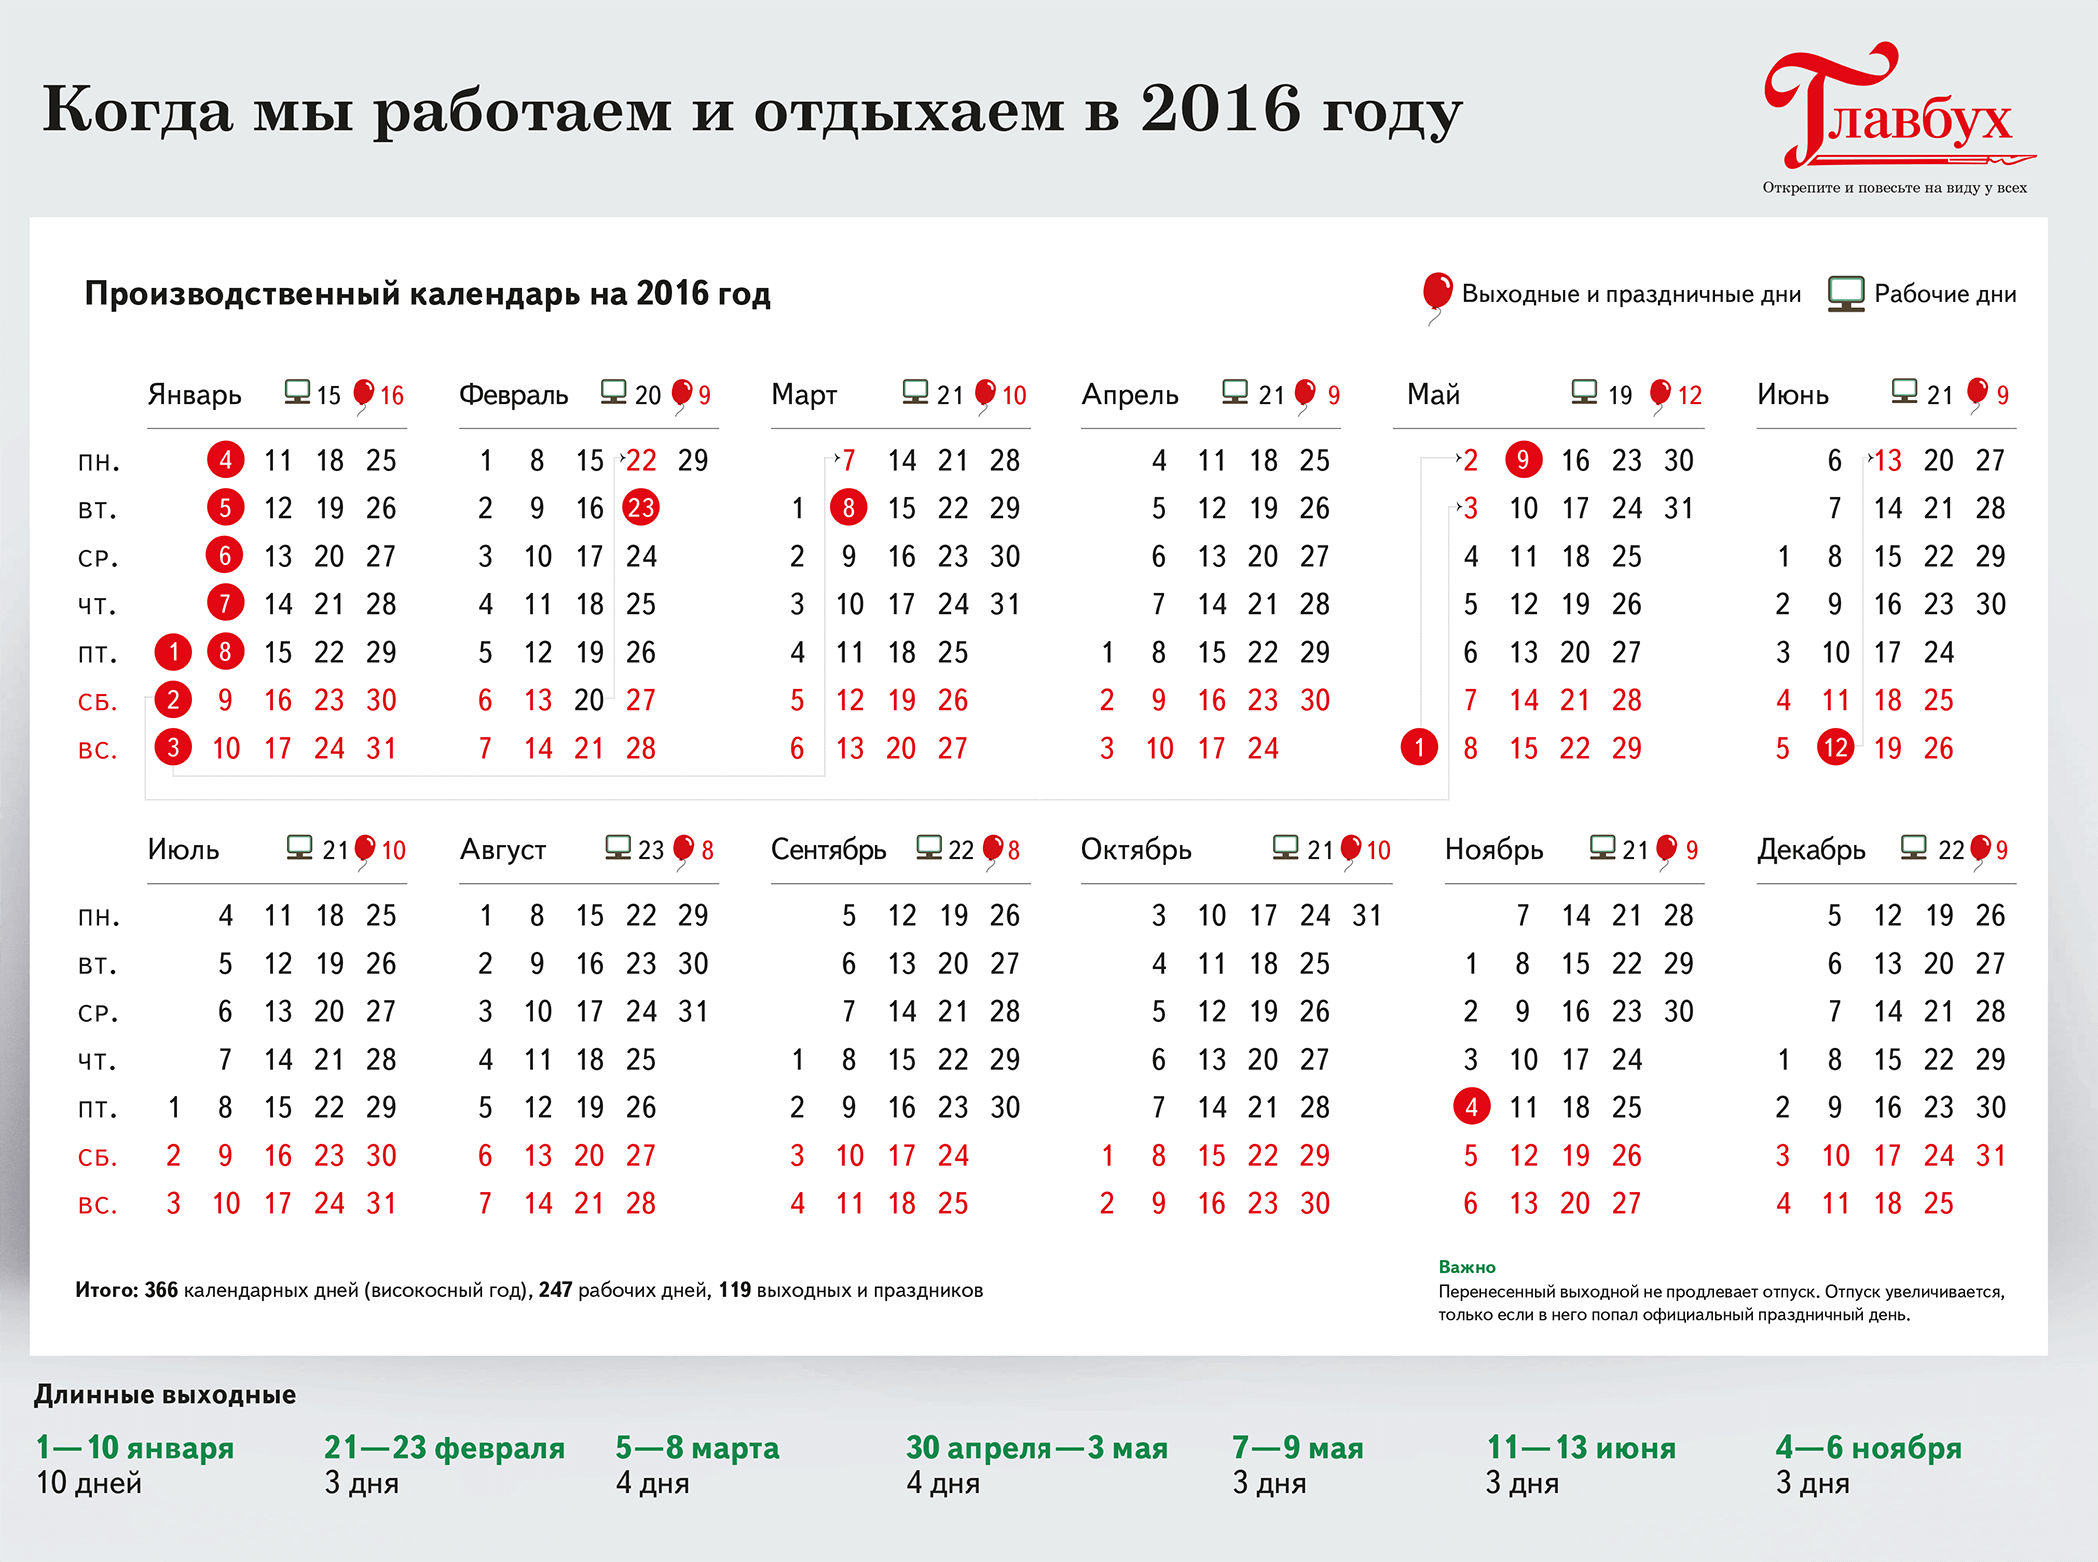 Праздничные рабочие дни. Календарь праздников. Календарь праздников 2016. Выходные и праздничные дни в 2016 году. 15 рабочих дней в календарные